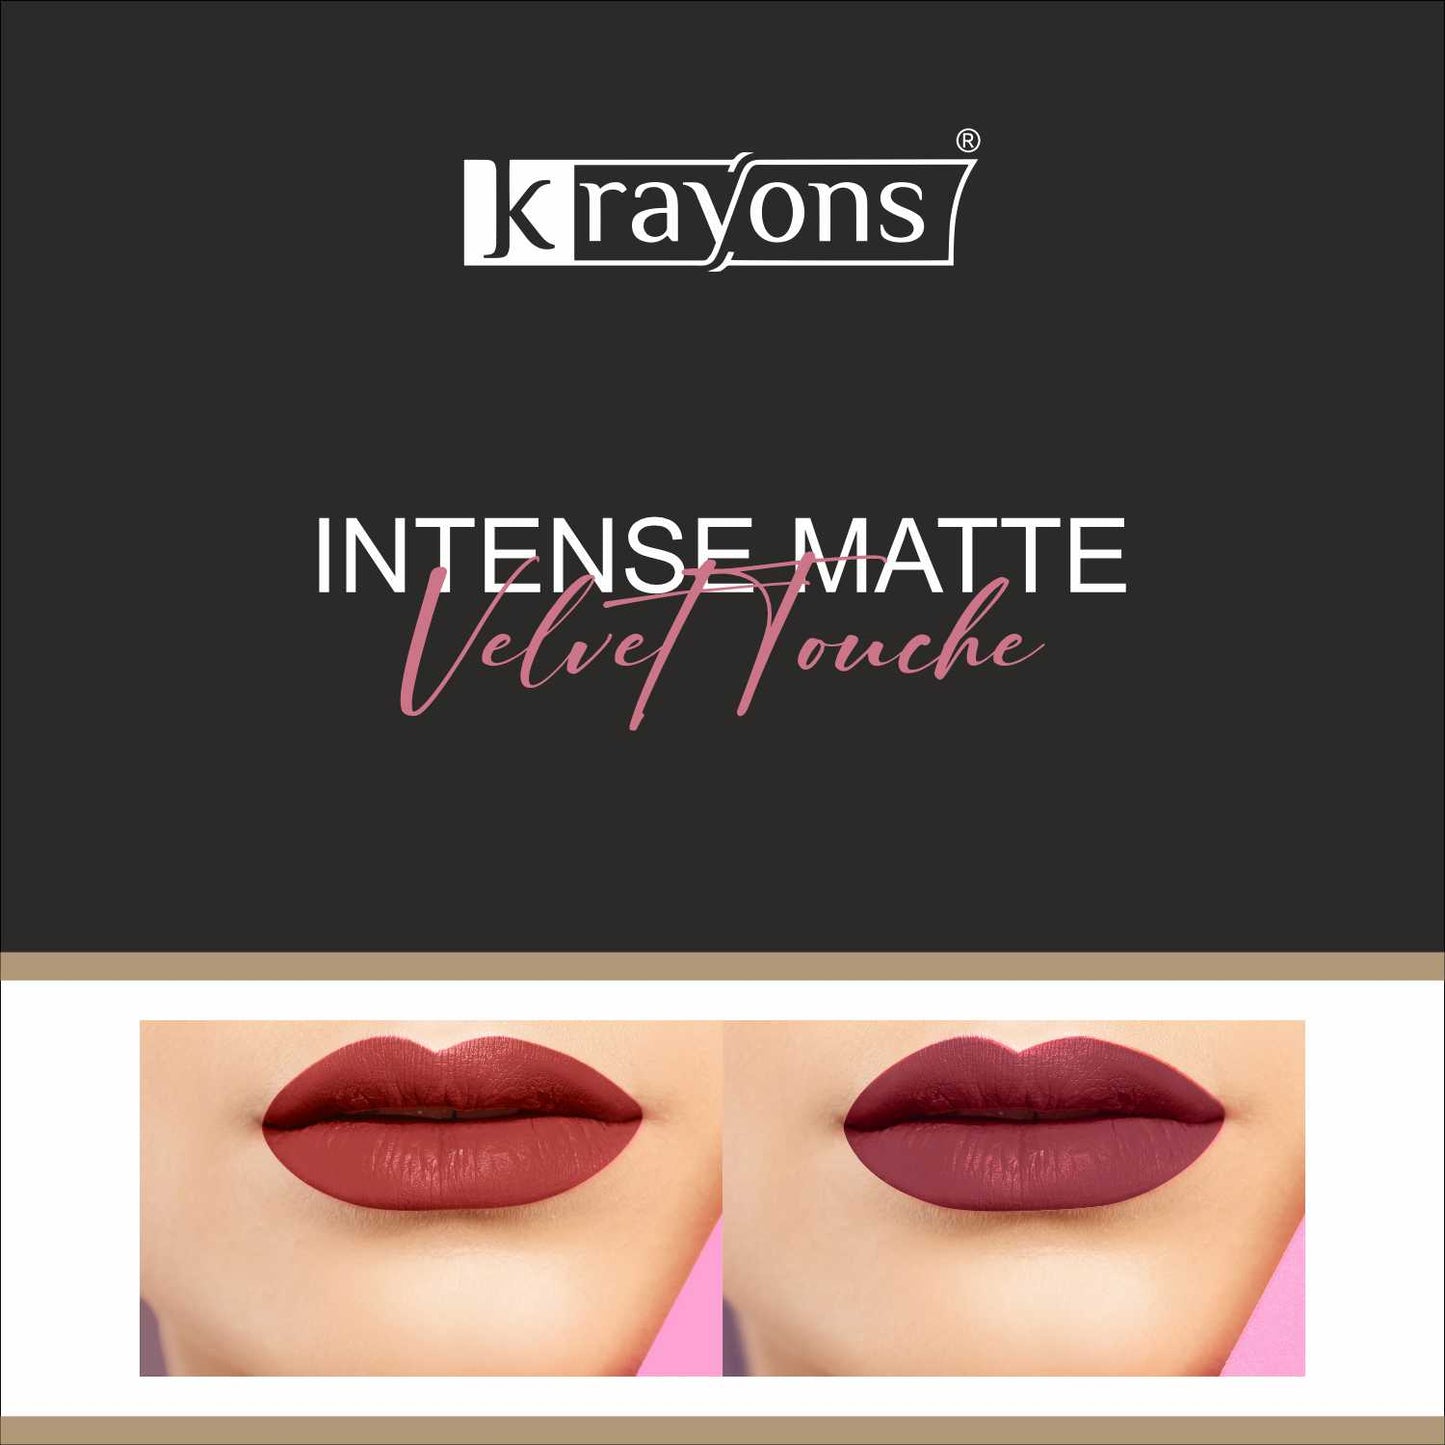 Krayons Intense Matte Lipstick, Waterproof, Longlasting, Scarlet Red, Cherry Maroon, 3.5gm Each (Pack of 2)